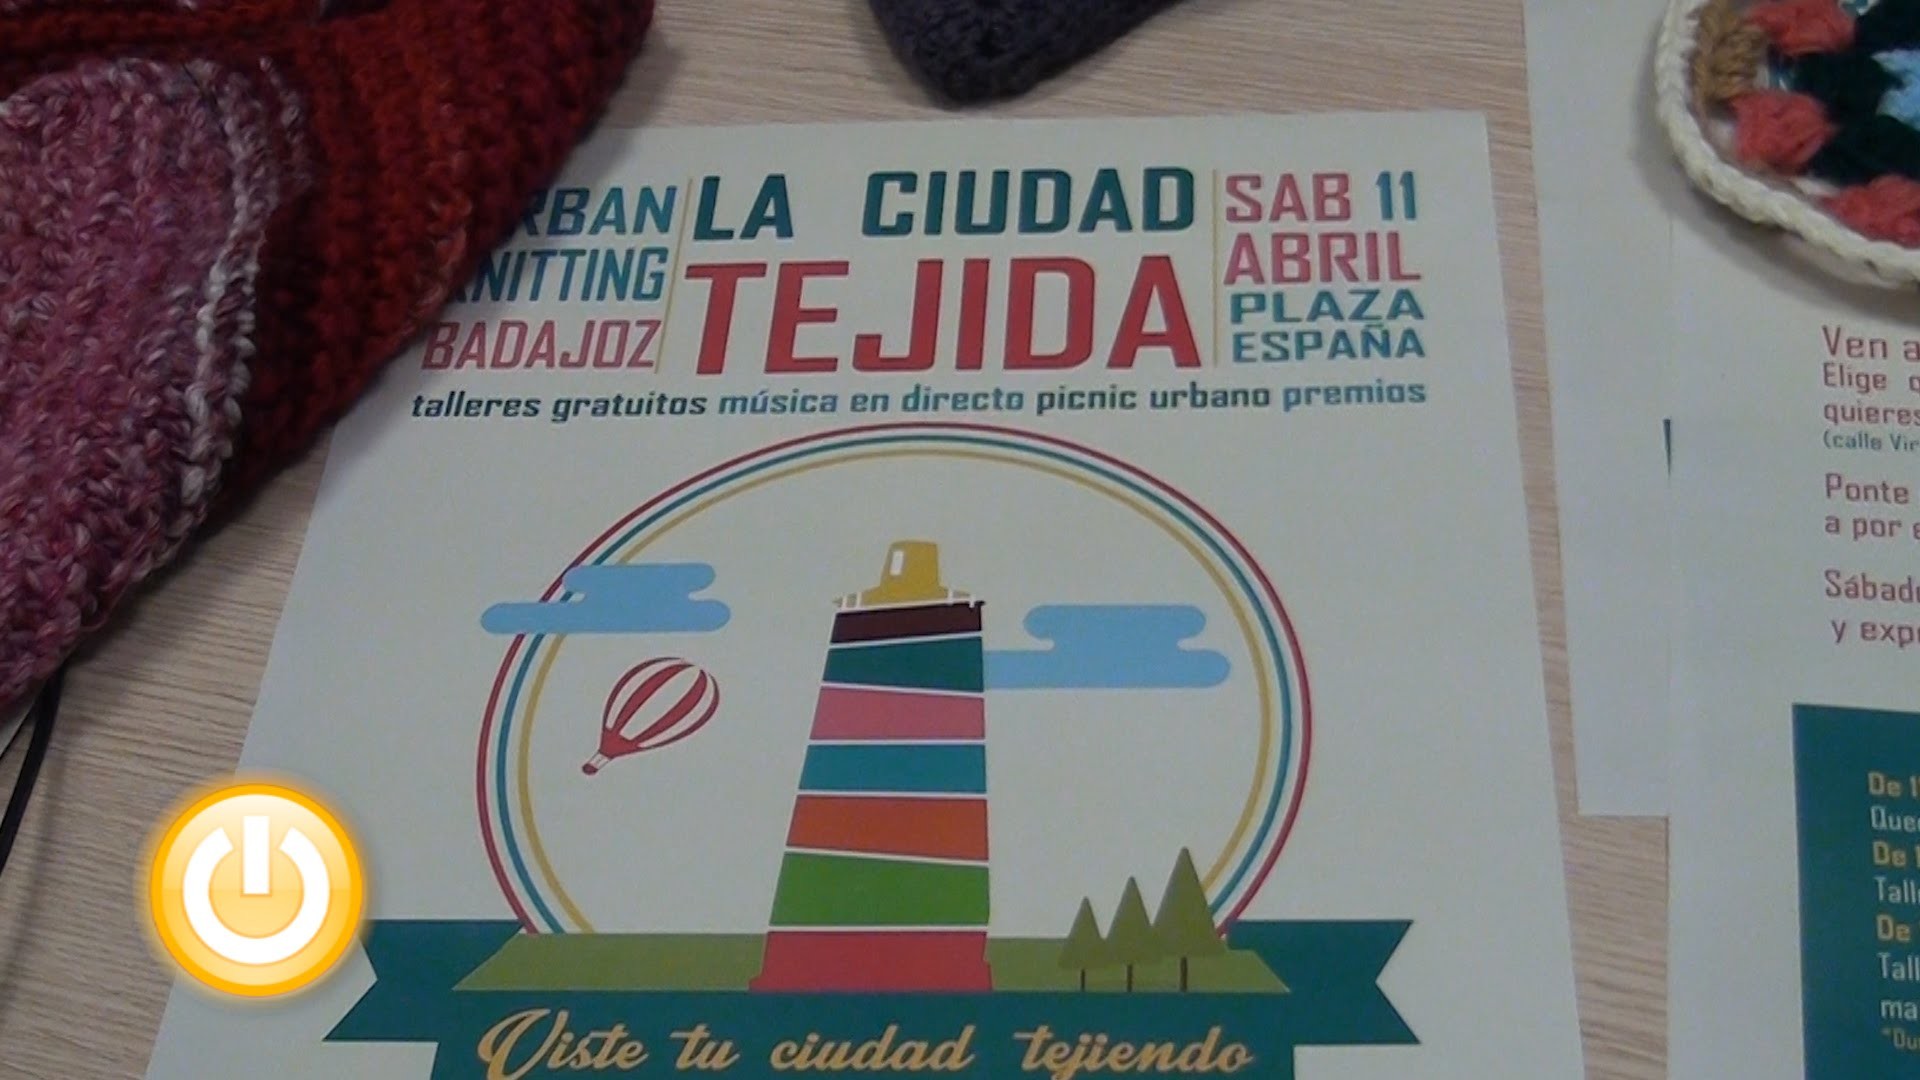 'La Ciudad Tejida', una nueva acción de Urban Knitting llega a Badajoz